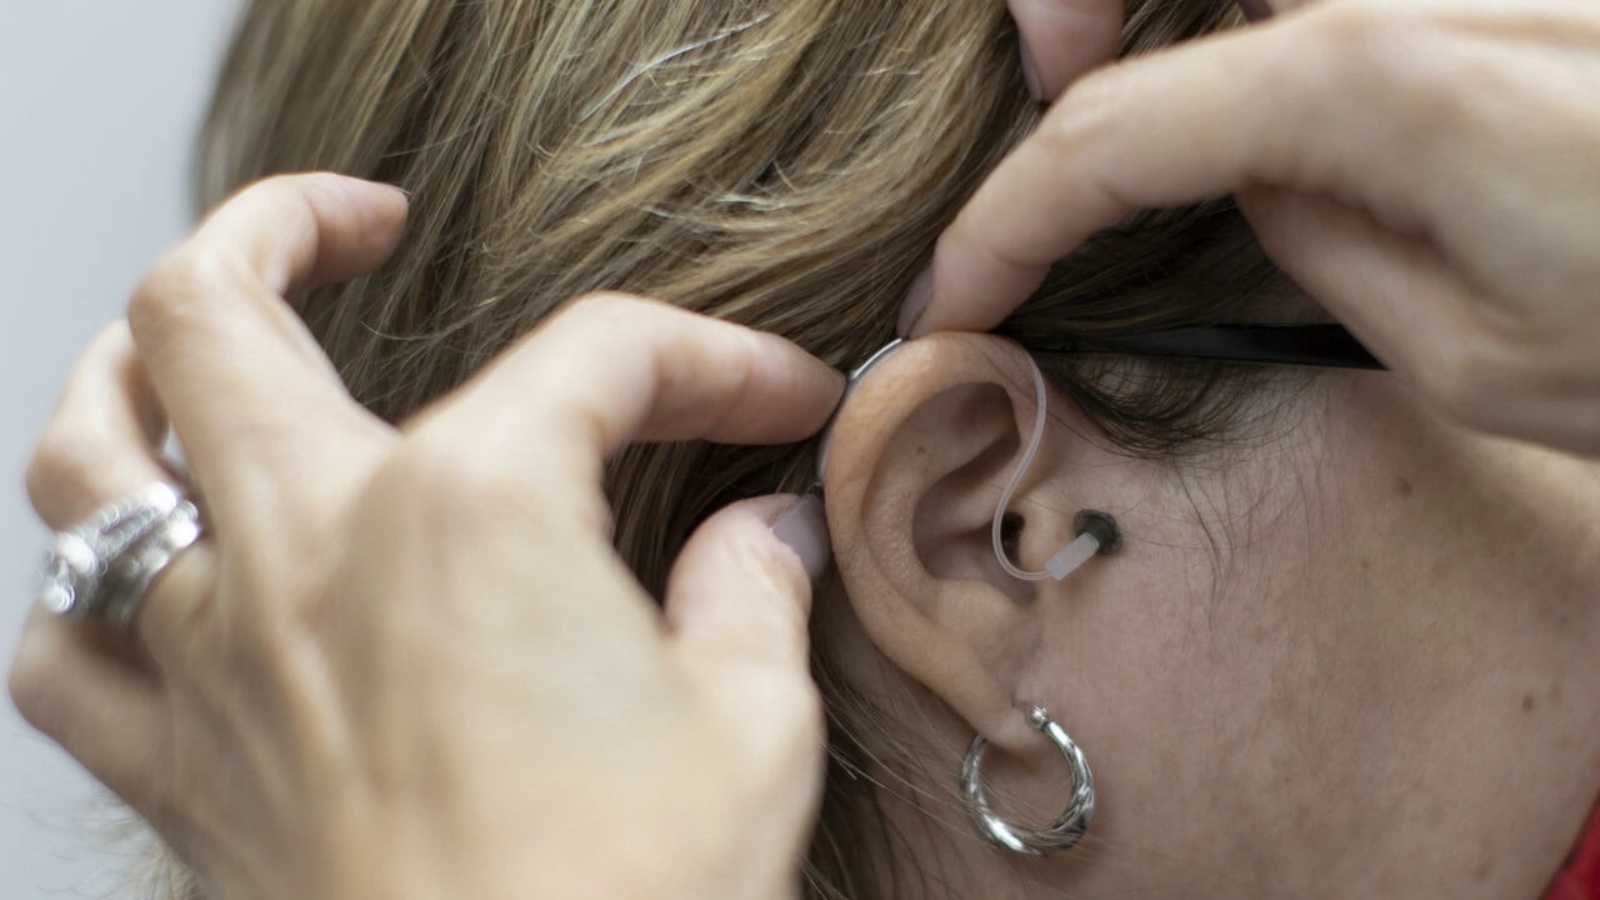 سيصبح الأميركيون بعد فترة شهرين قادرين على شراء أجهزة سمعية تعالج مشاكل السمع الطفيفة إلى المتوسطة مباشرة من المتاجر